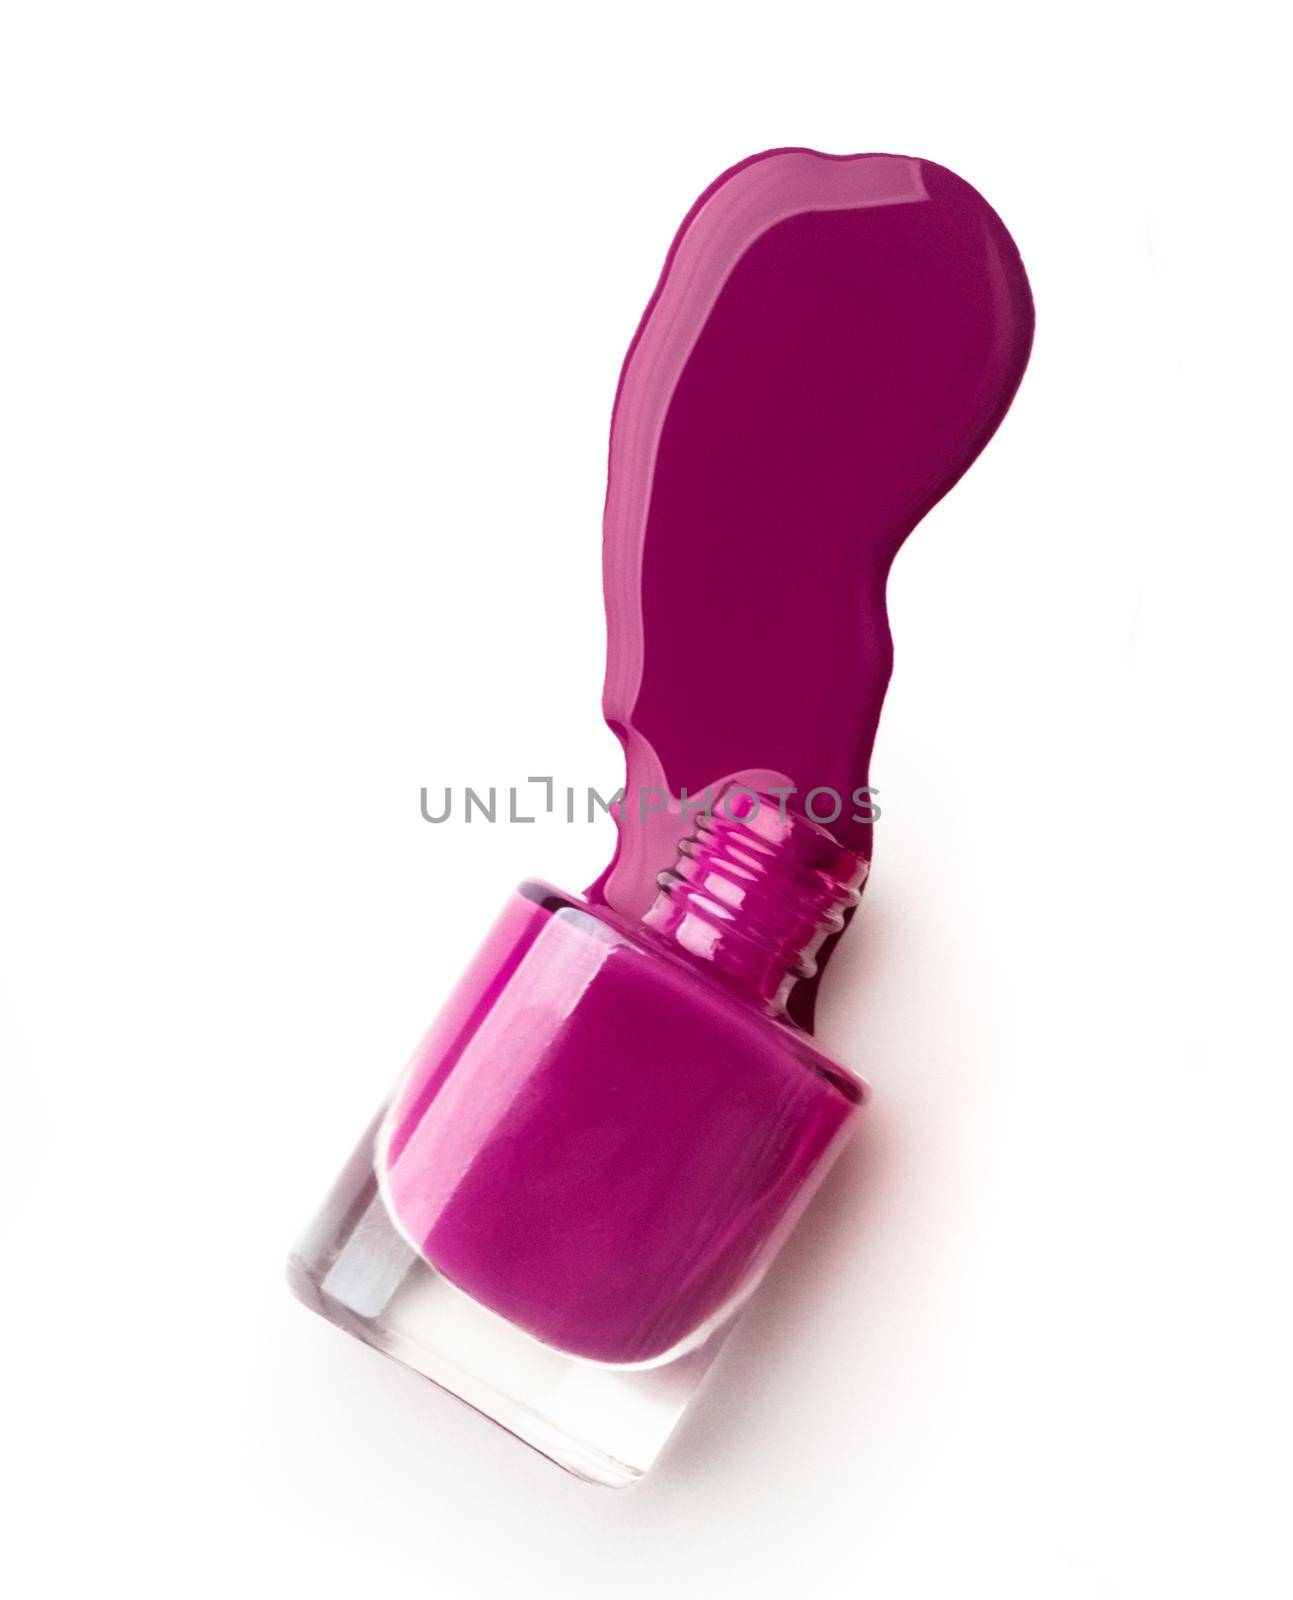 Violet nail polish bottle by GekaSkr